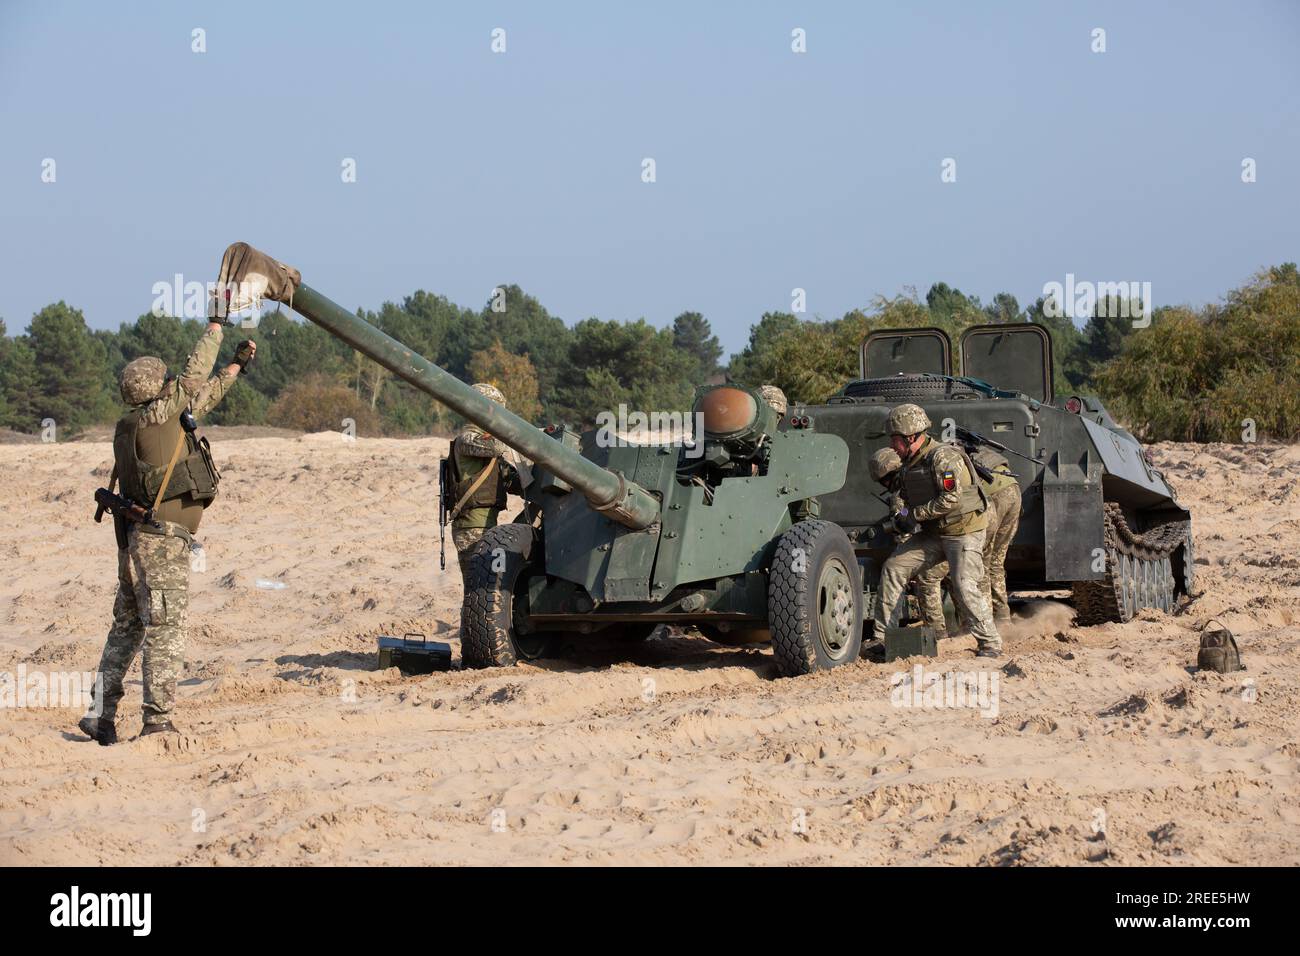 Ukrainische Soldaten bereiten sich darauf vor, die Panzerabwehrwaffe MT-12 Rapier während Übungen auf dem Artillerieplatz in der Nähe des Dorfes Divychky, Kiew, abzufeuern. Stockfoto